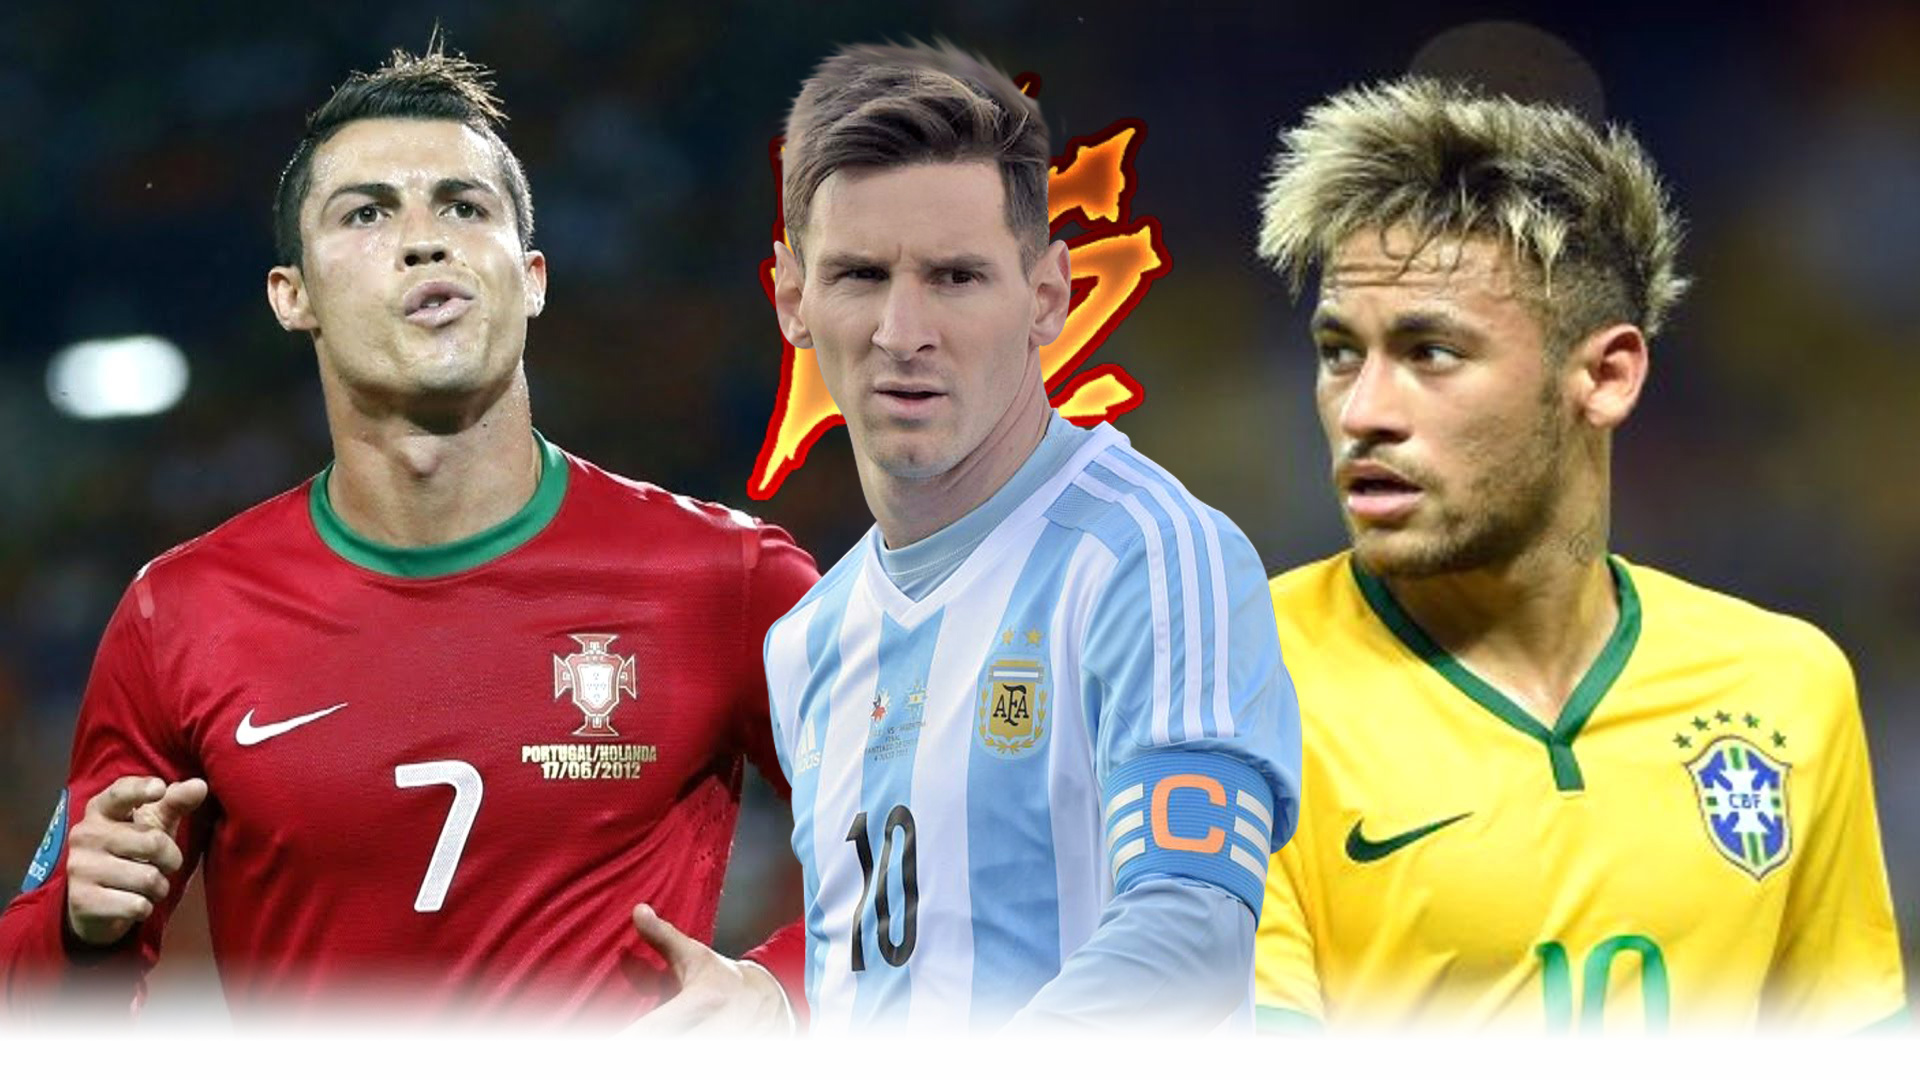 World Cup 2018, Messi, Ronaldo, Neymar, Cuộc đua, hình nền: Cùng điểm qua những hình nền đáng chú ý nhất của Cuộc đua World Cup 2018 với sự tham gia của các siêu sao bóng đá như Messi, Ronaldo hay Neymar. Không nên bỏ lỡ những khoảnh khắc tuyệt vời của giải đấu lớn nhất toàn cầu.